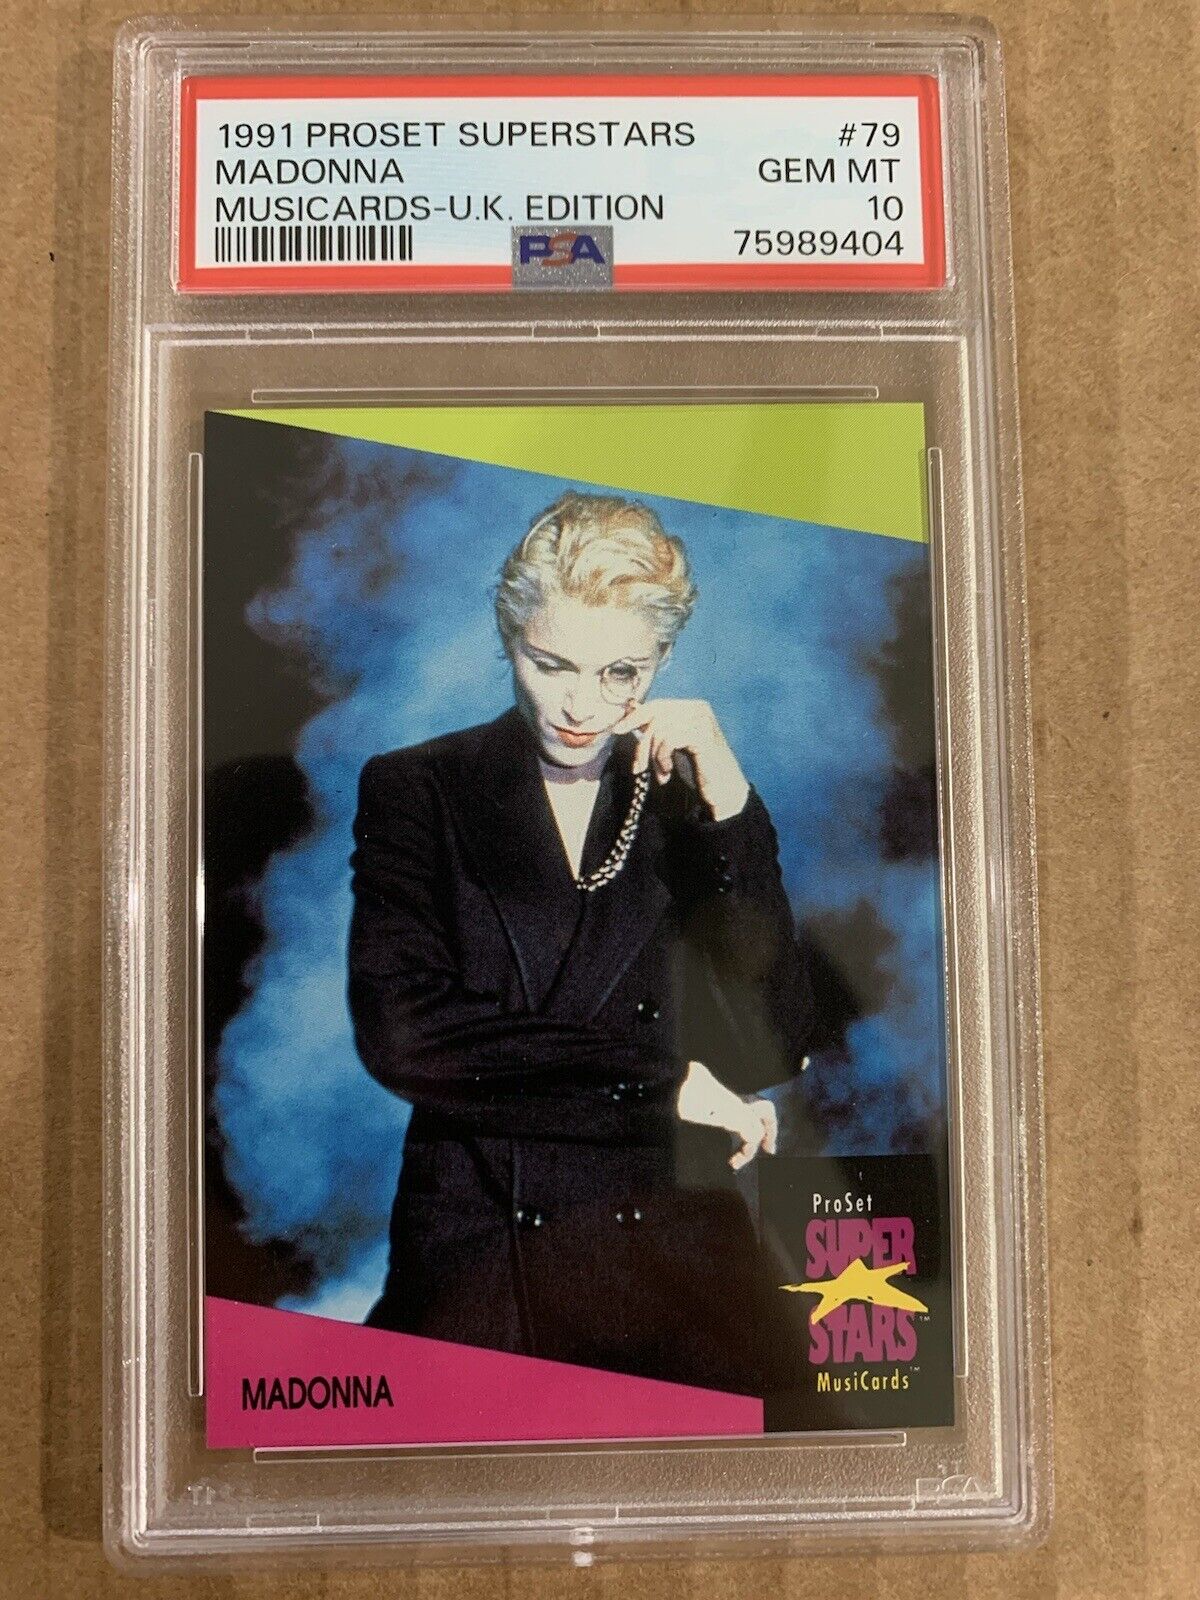 PSA 10 - 1991 Pro Set Musicards UK Edition #79 Madonna - R&R HOF